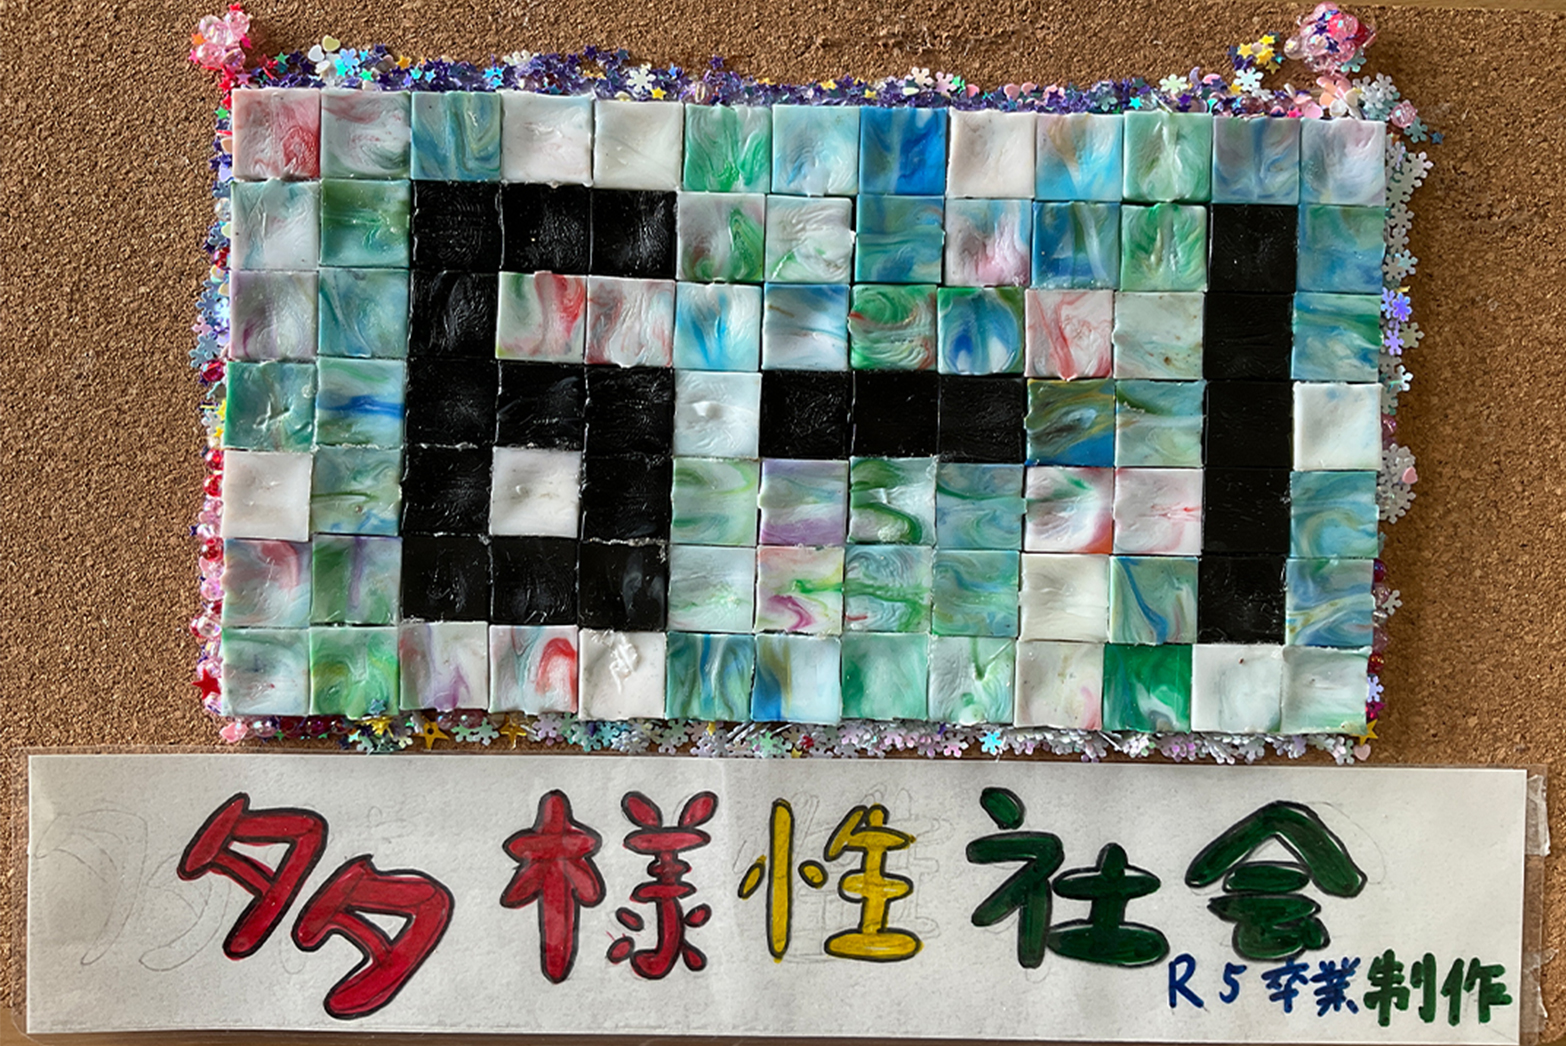 呼子小学校6年生 卒業制作 多様性ネームプレート